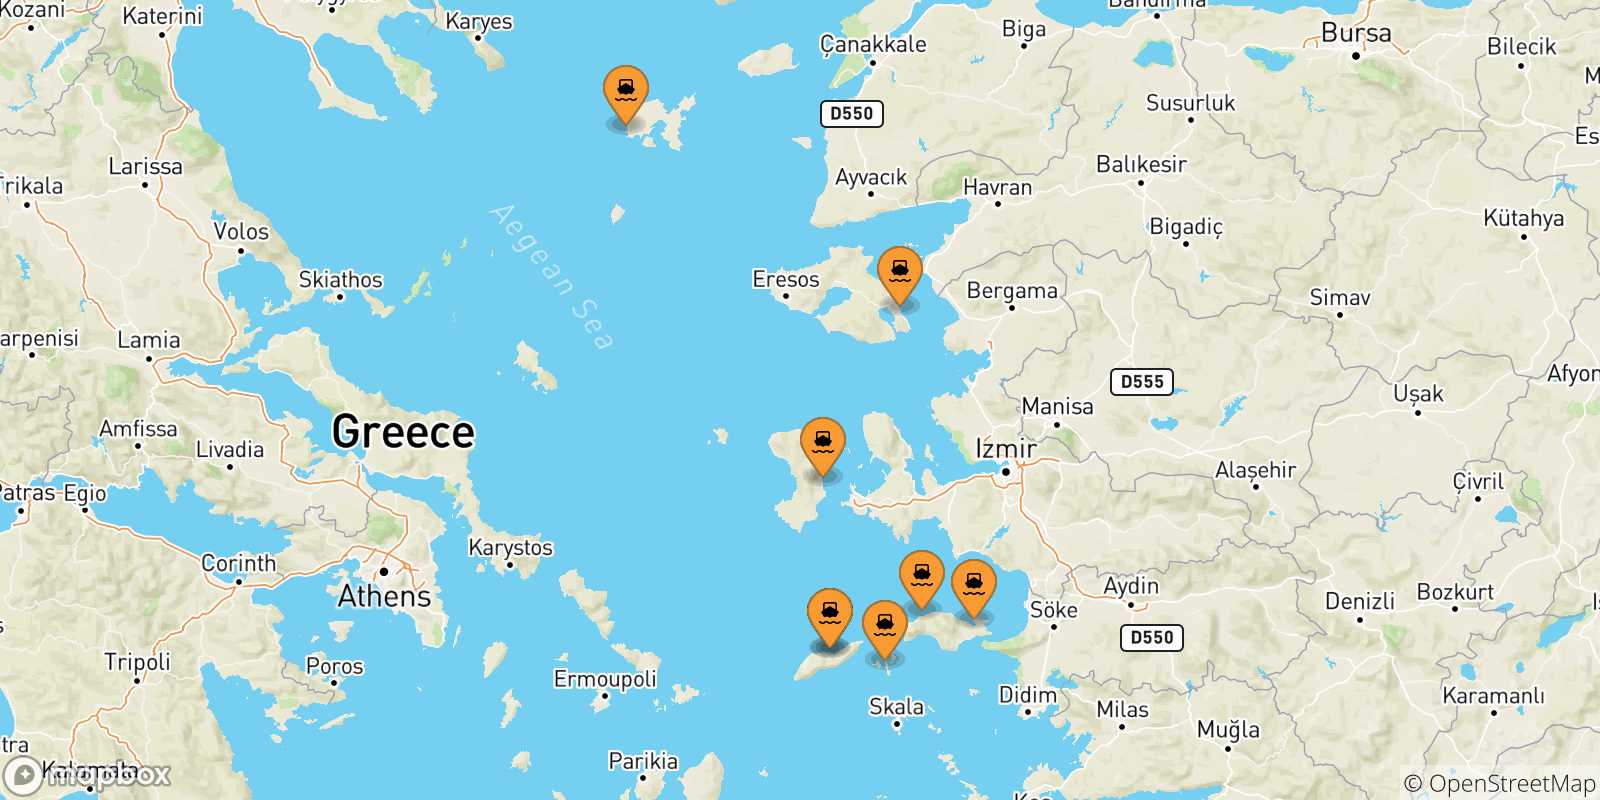 Mappa delle possibili rotte tra le Isole Egeo Nord Orientale e Mirina (Limnos)